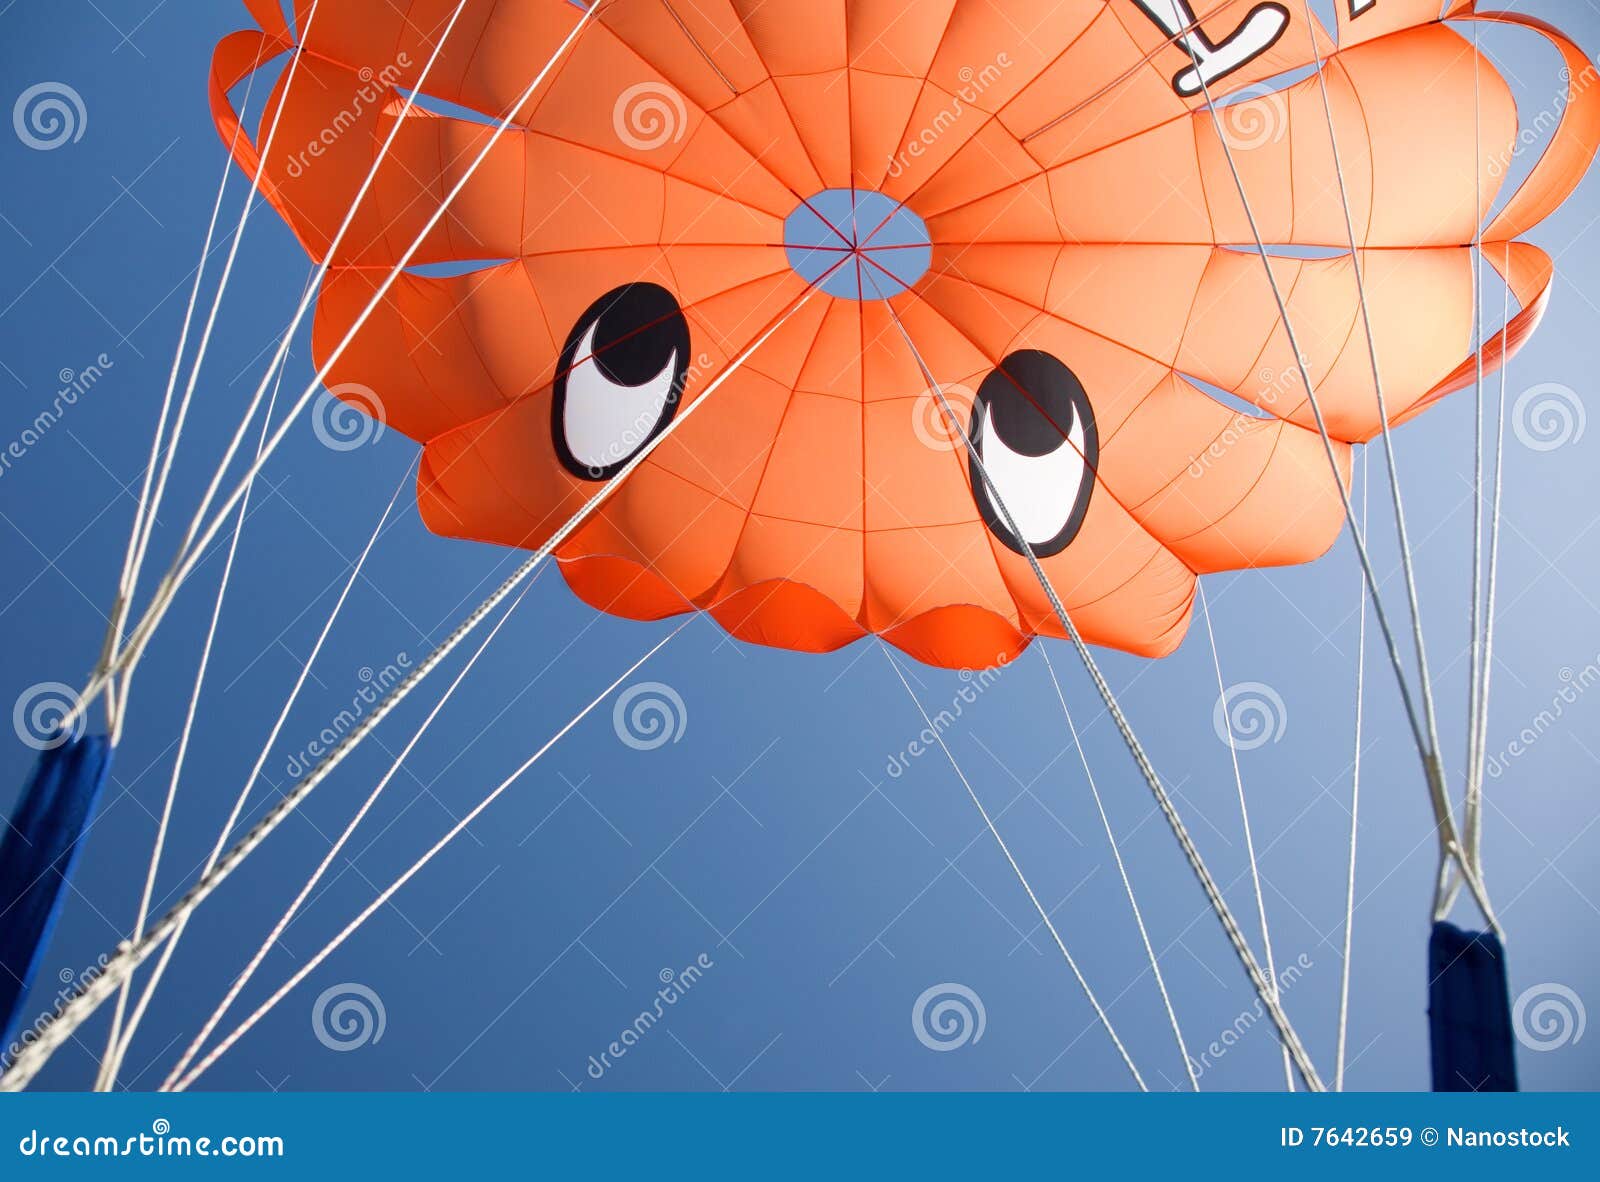 orange parasail against blue sky